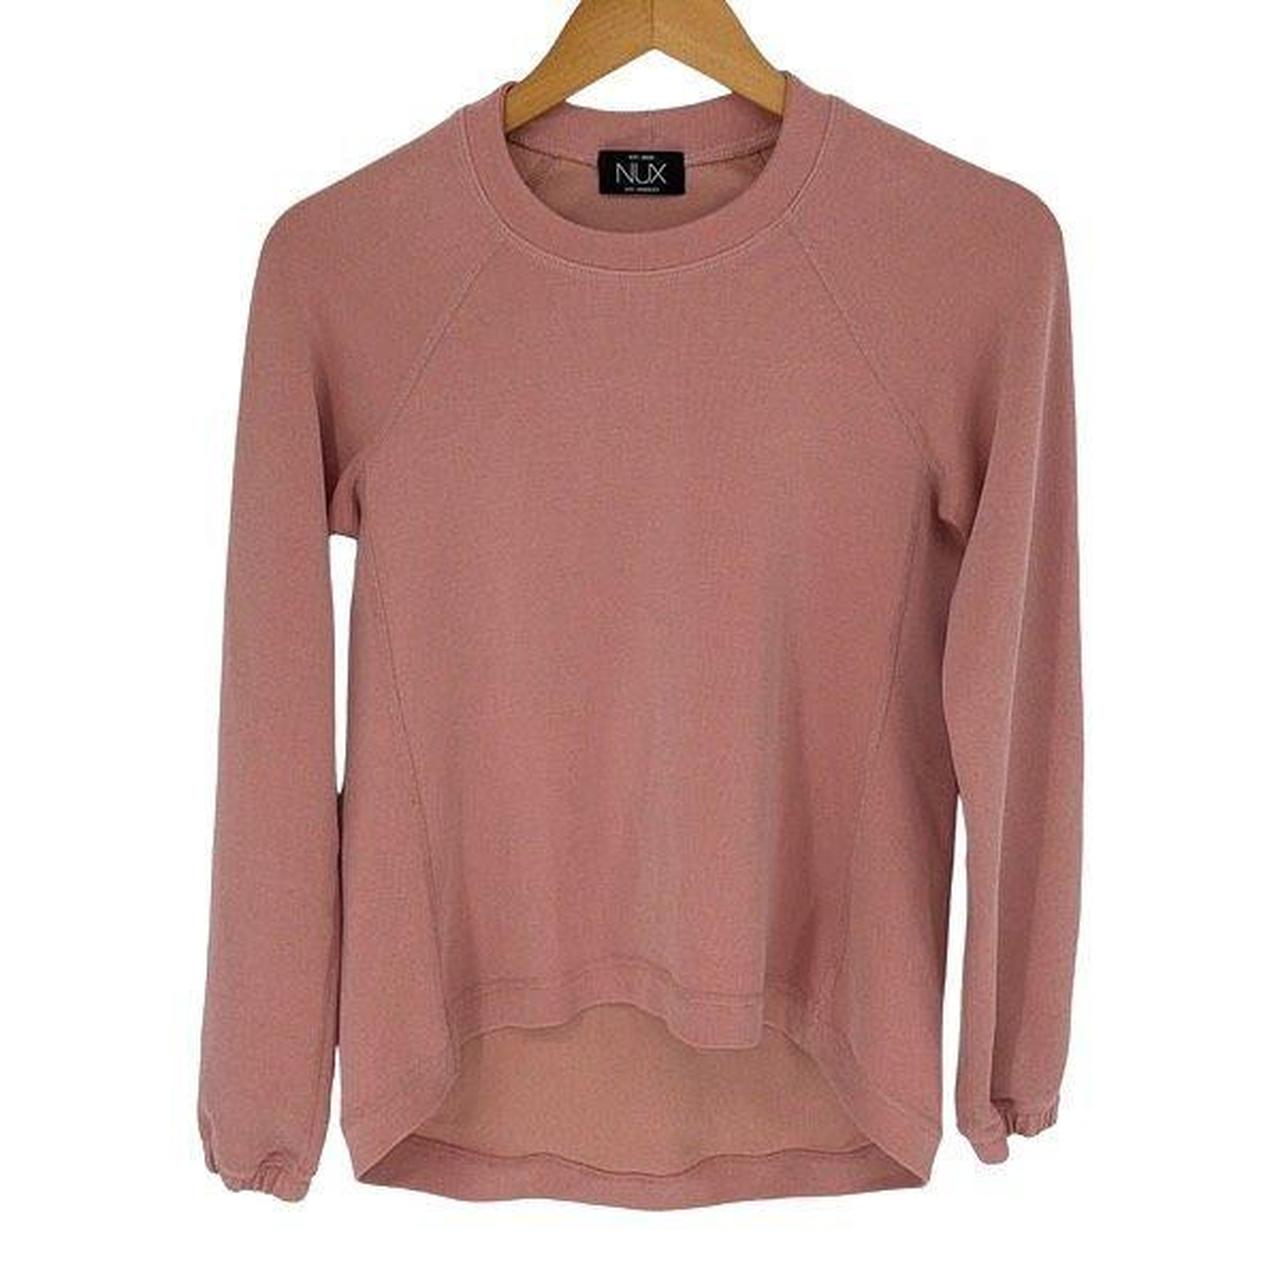 LOFT~Marled Elliptical Hem~Pink Knit Sweater~Women's - Depop